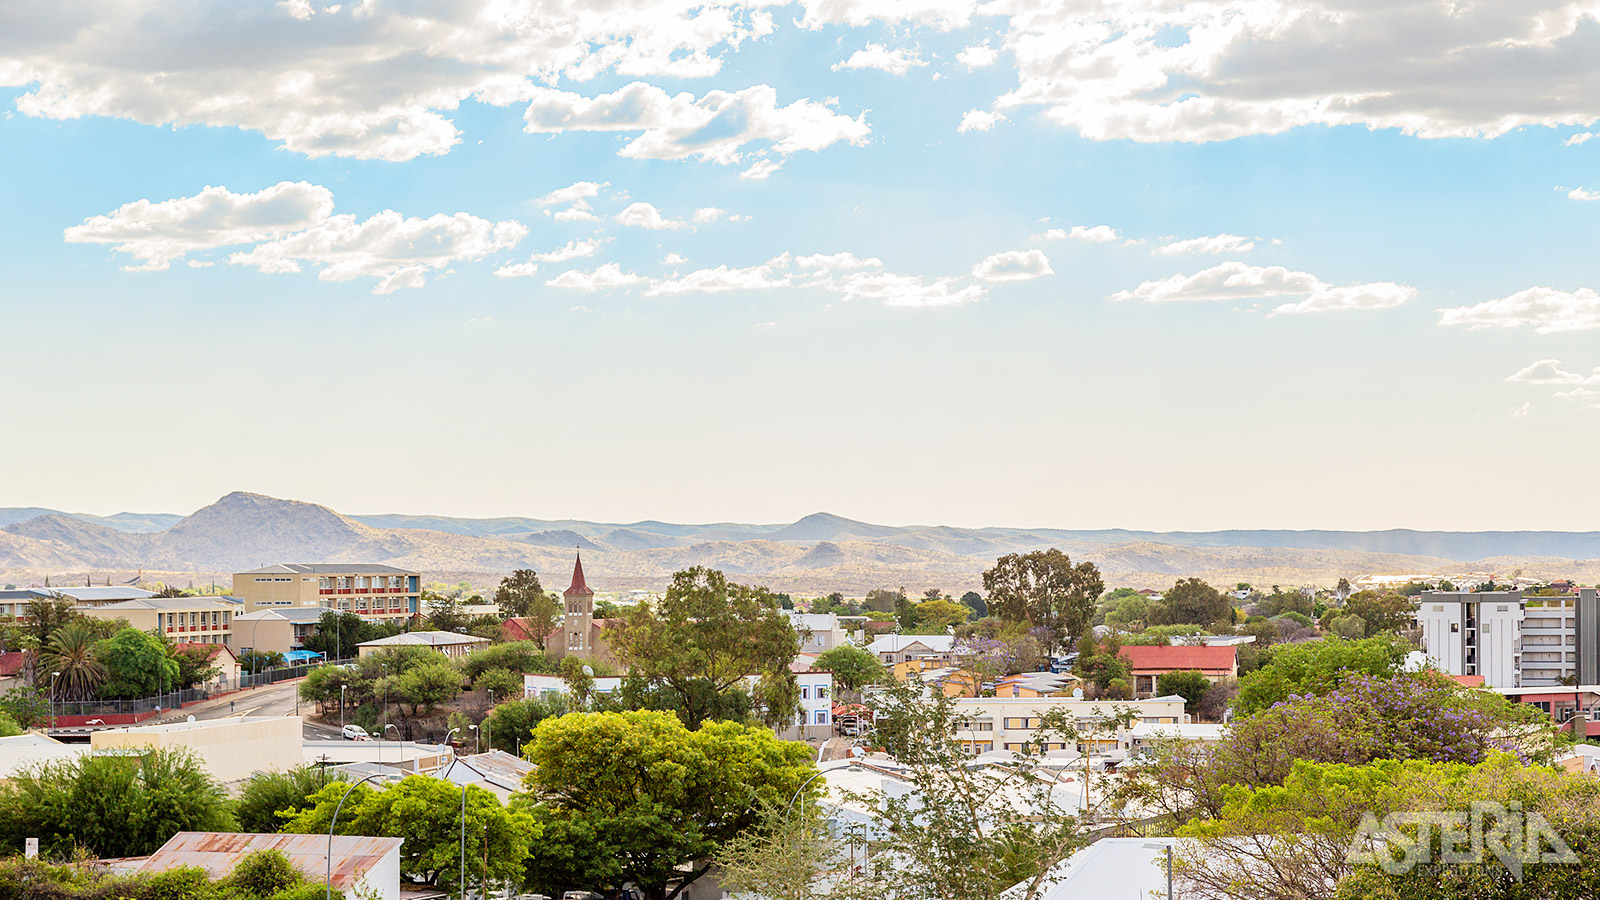 Welkom in Windhoek, de hoofdstad van Namibië